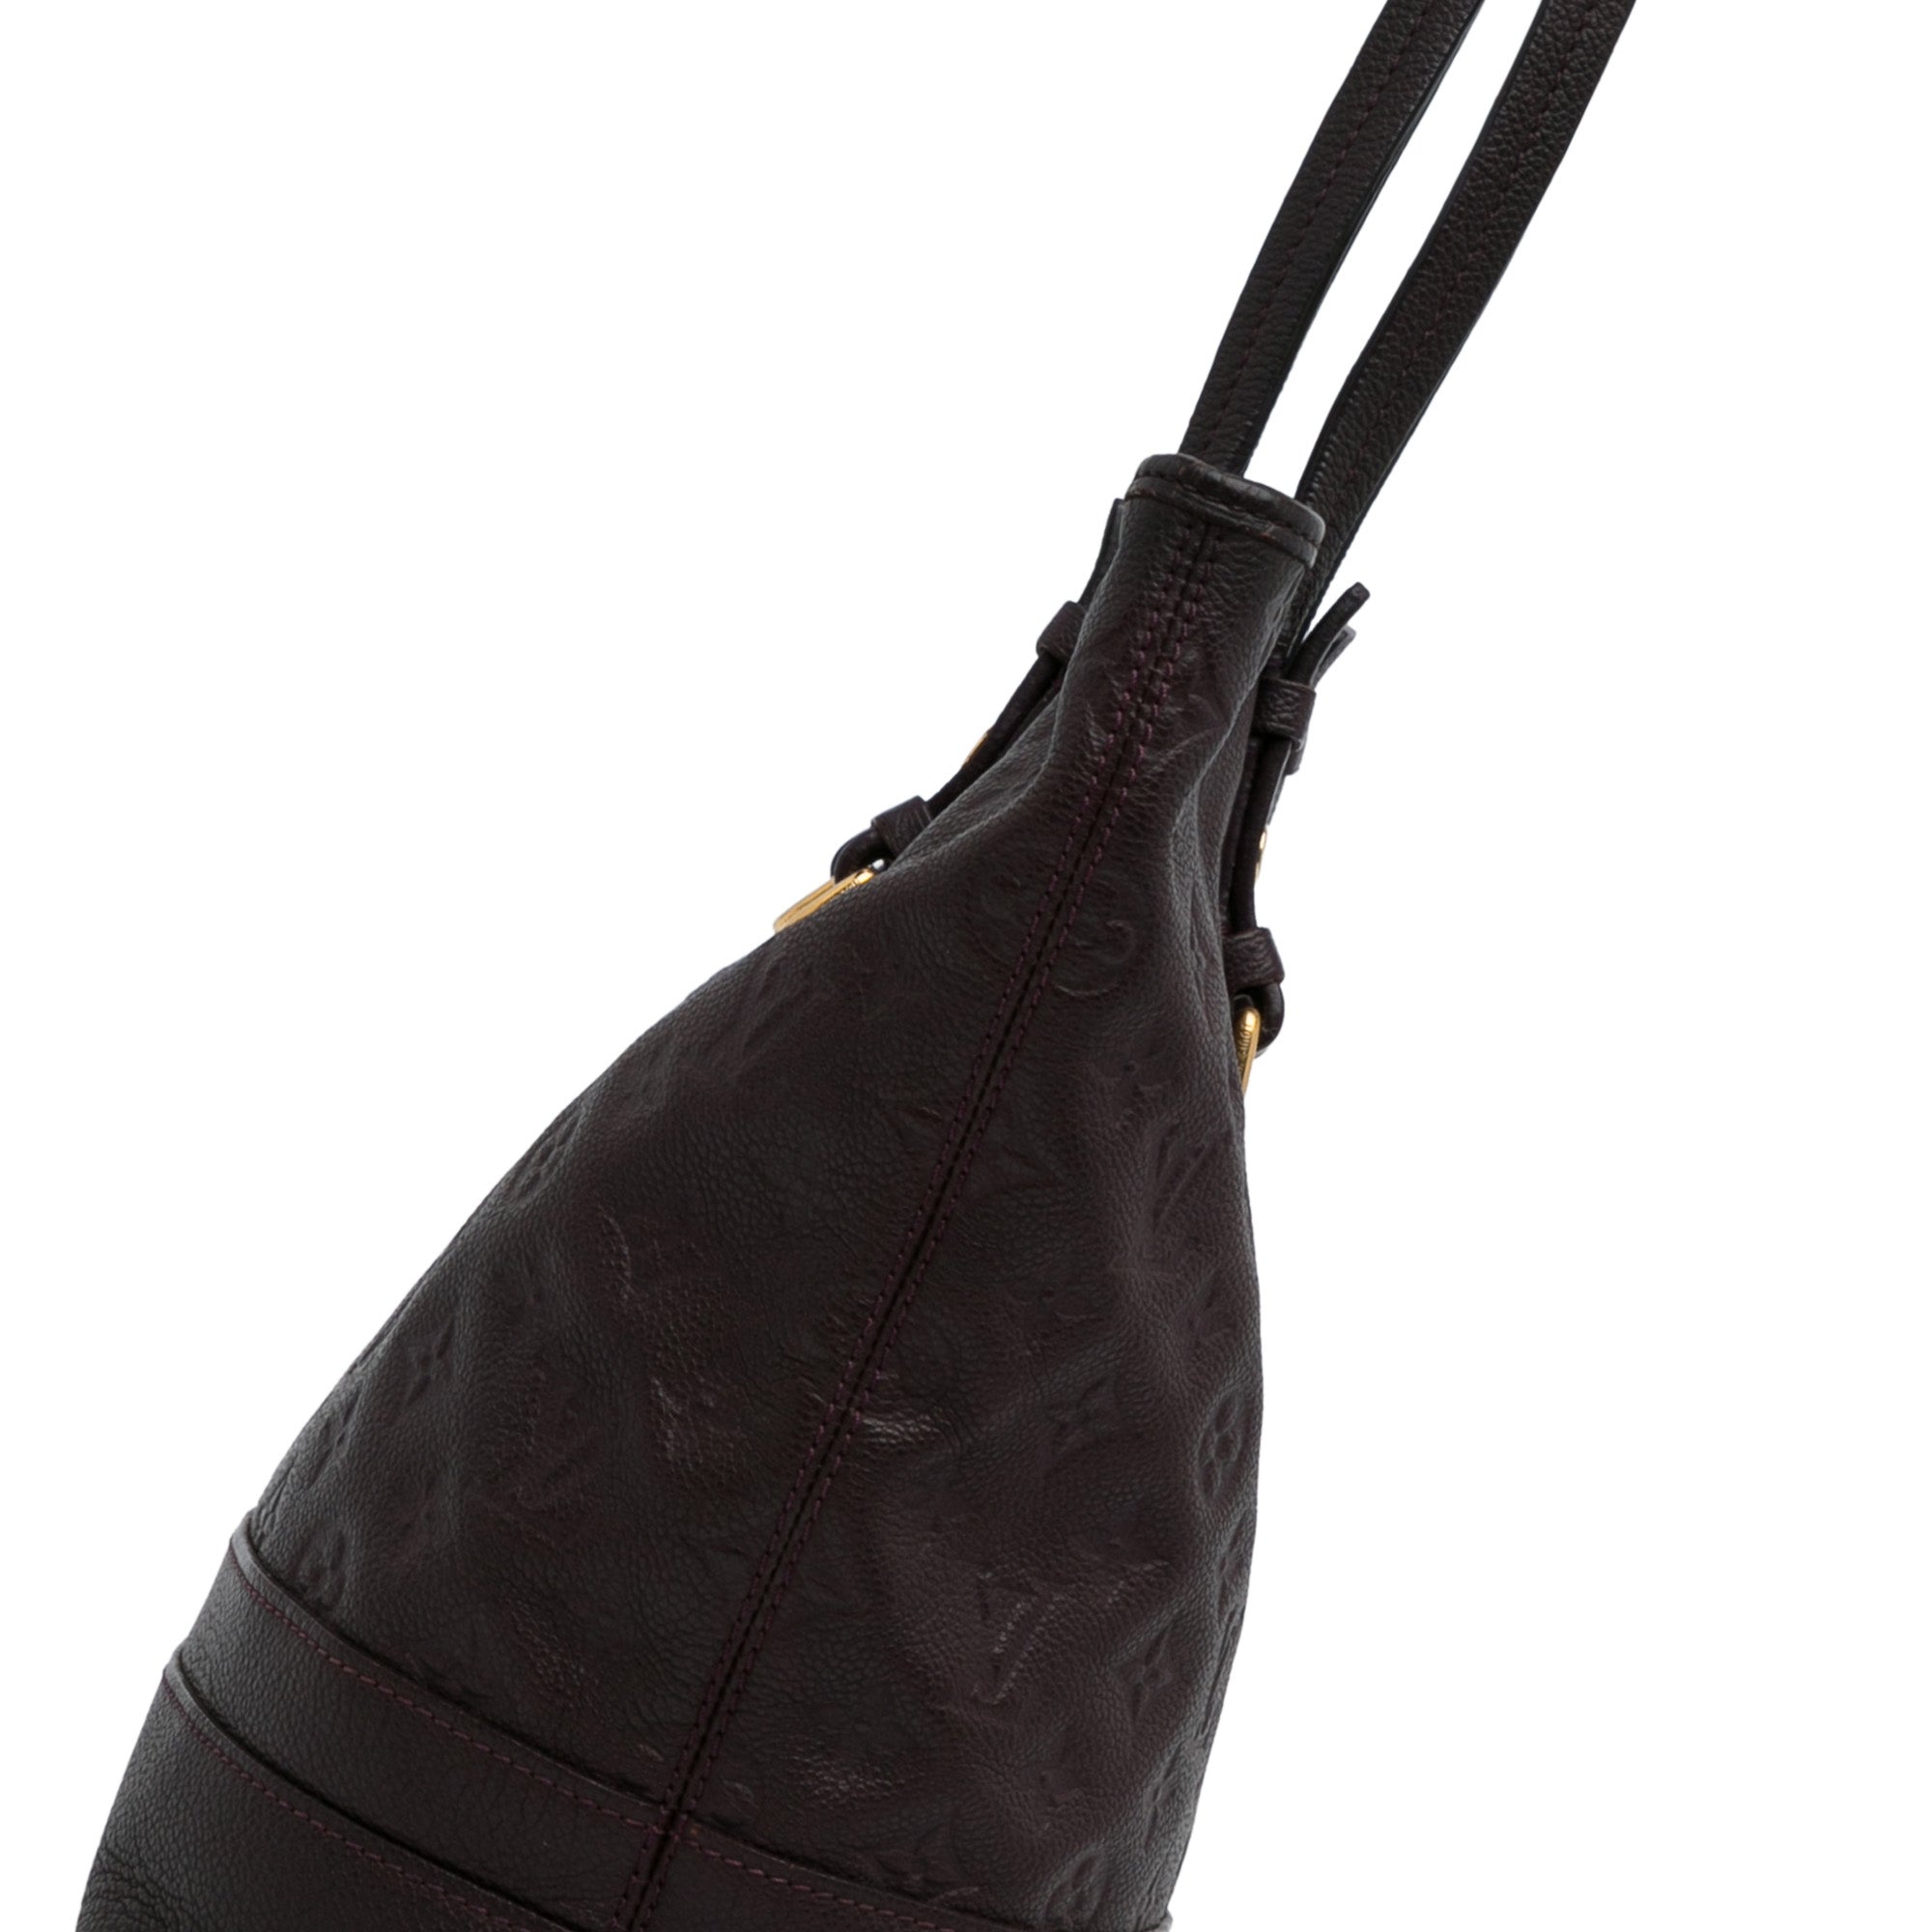 Louis Vuitton Citadine PM Purple Empreinte Leather Shoulder Bag